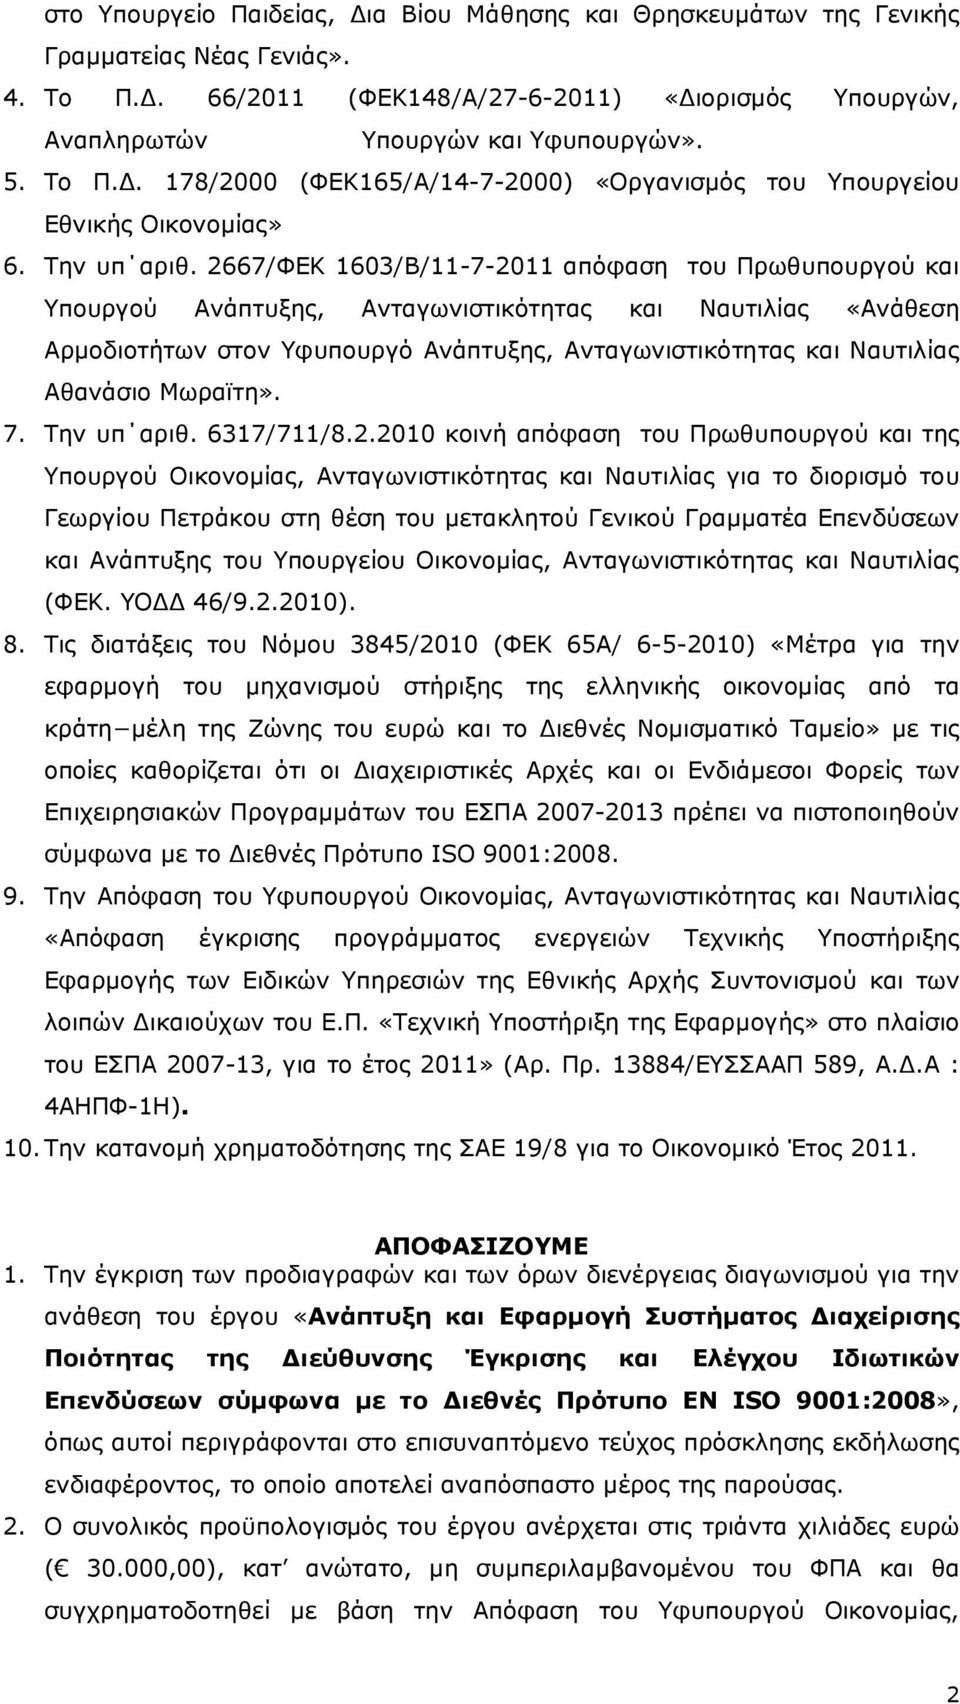 2667/ΦΕΚ 1603/Β/11-7-2011 απόφαση του Πρωθυπουργού και Υπουργού Ανάπτυξης, Ανταγωνιστικότητας και Ναυτιλίας «Ανάθεση Αρµοδιοτήτων στον Υφυπουργό Ανάπτυξης, Ανταγωνιστικότητας και Ναυτιλίας Αθανάσιο